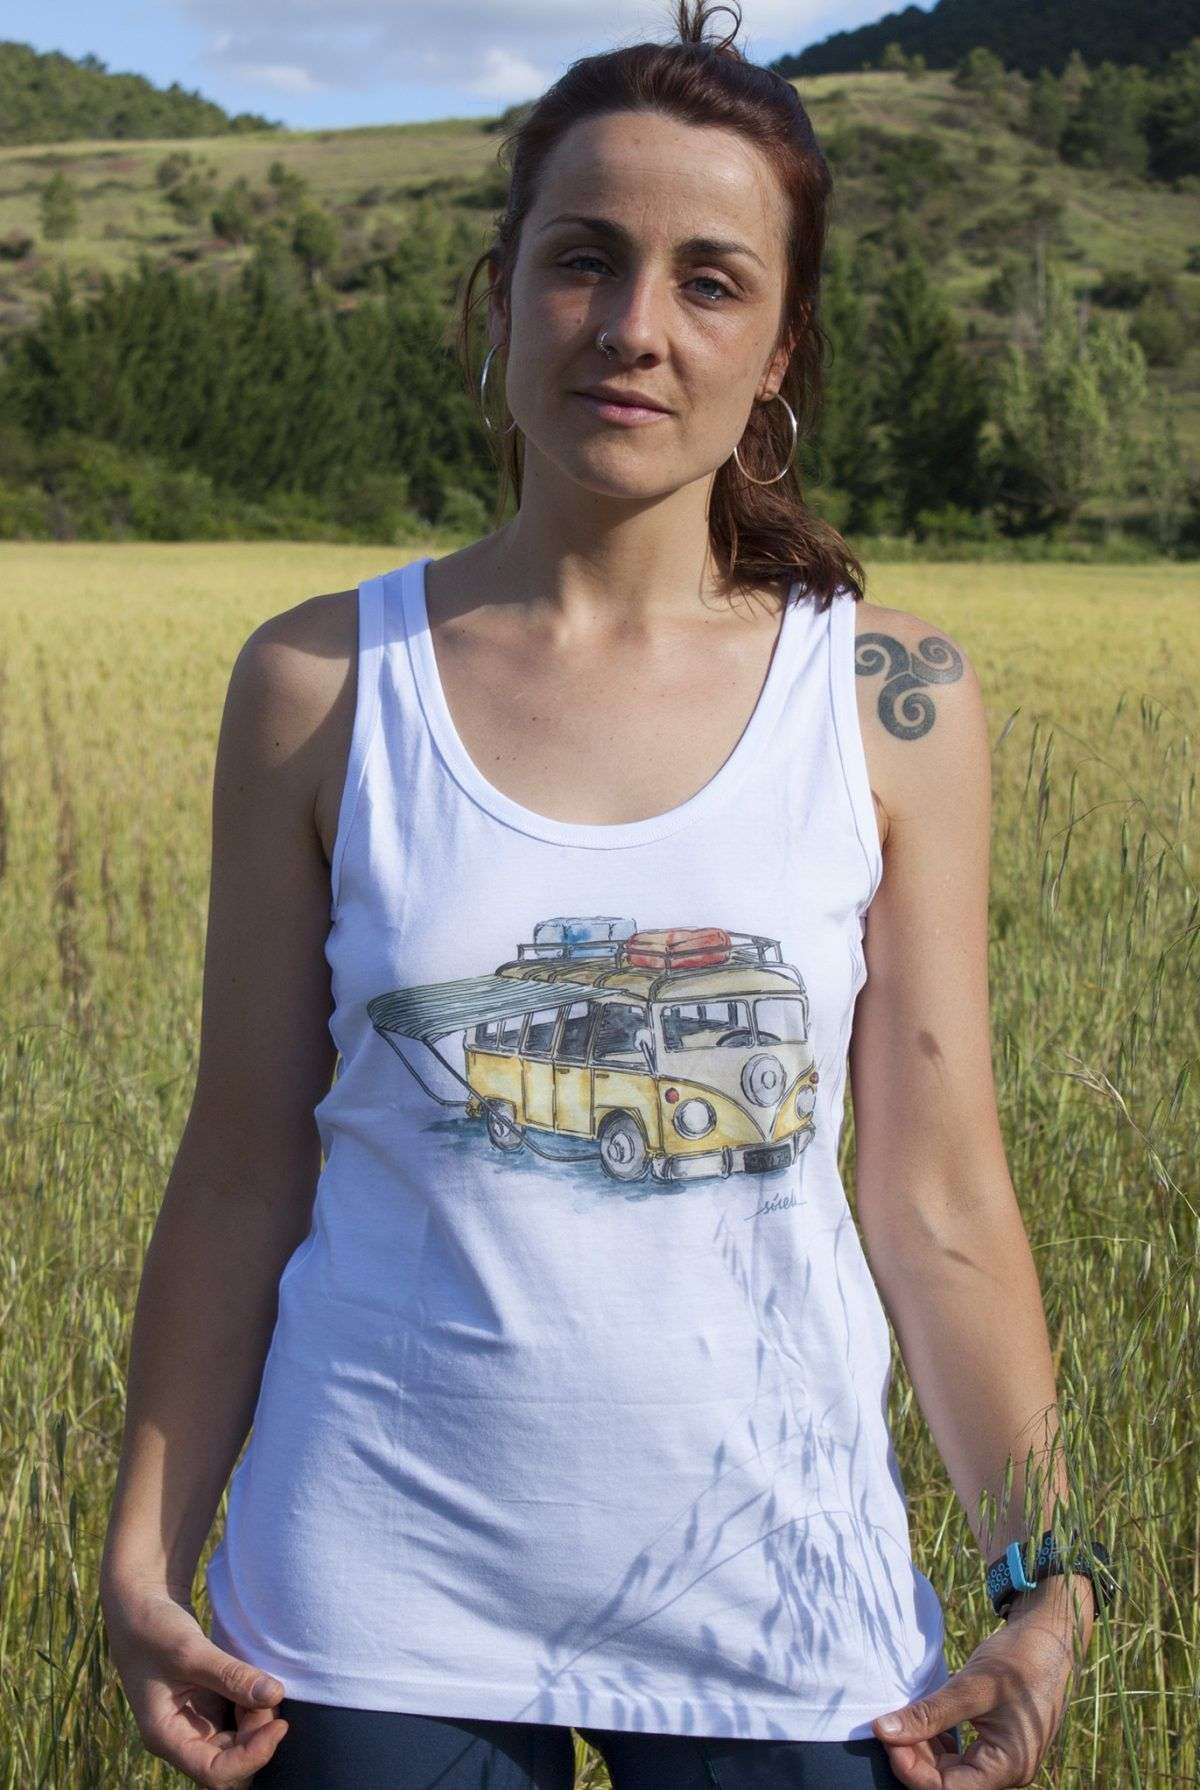 camiseta-furgoneta vw-algodon organico-sirem wild-moda etica-mujer tirantes